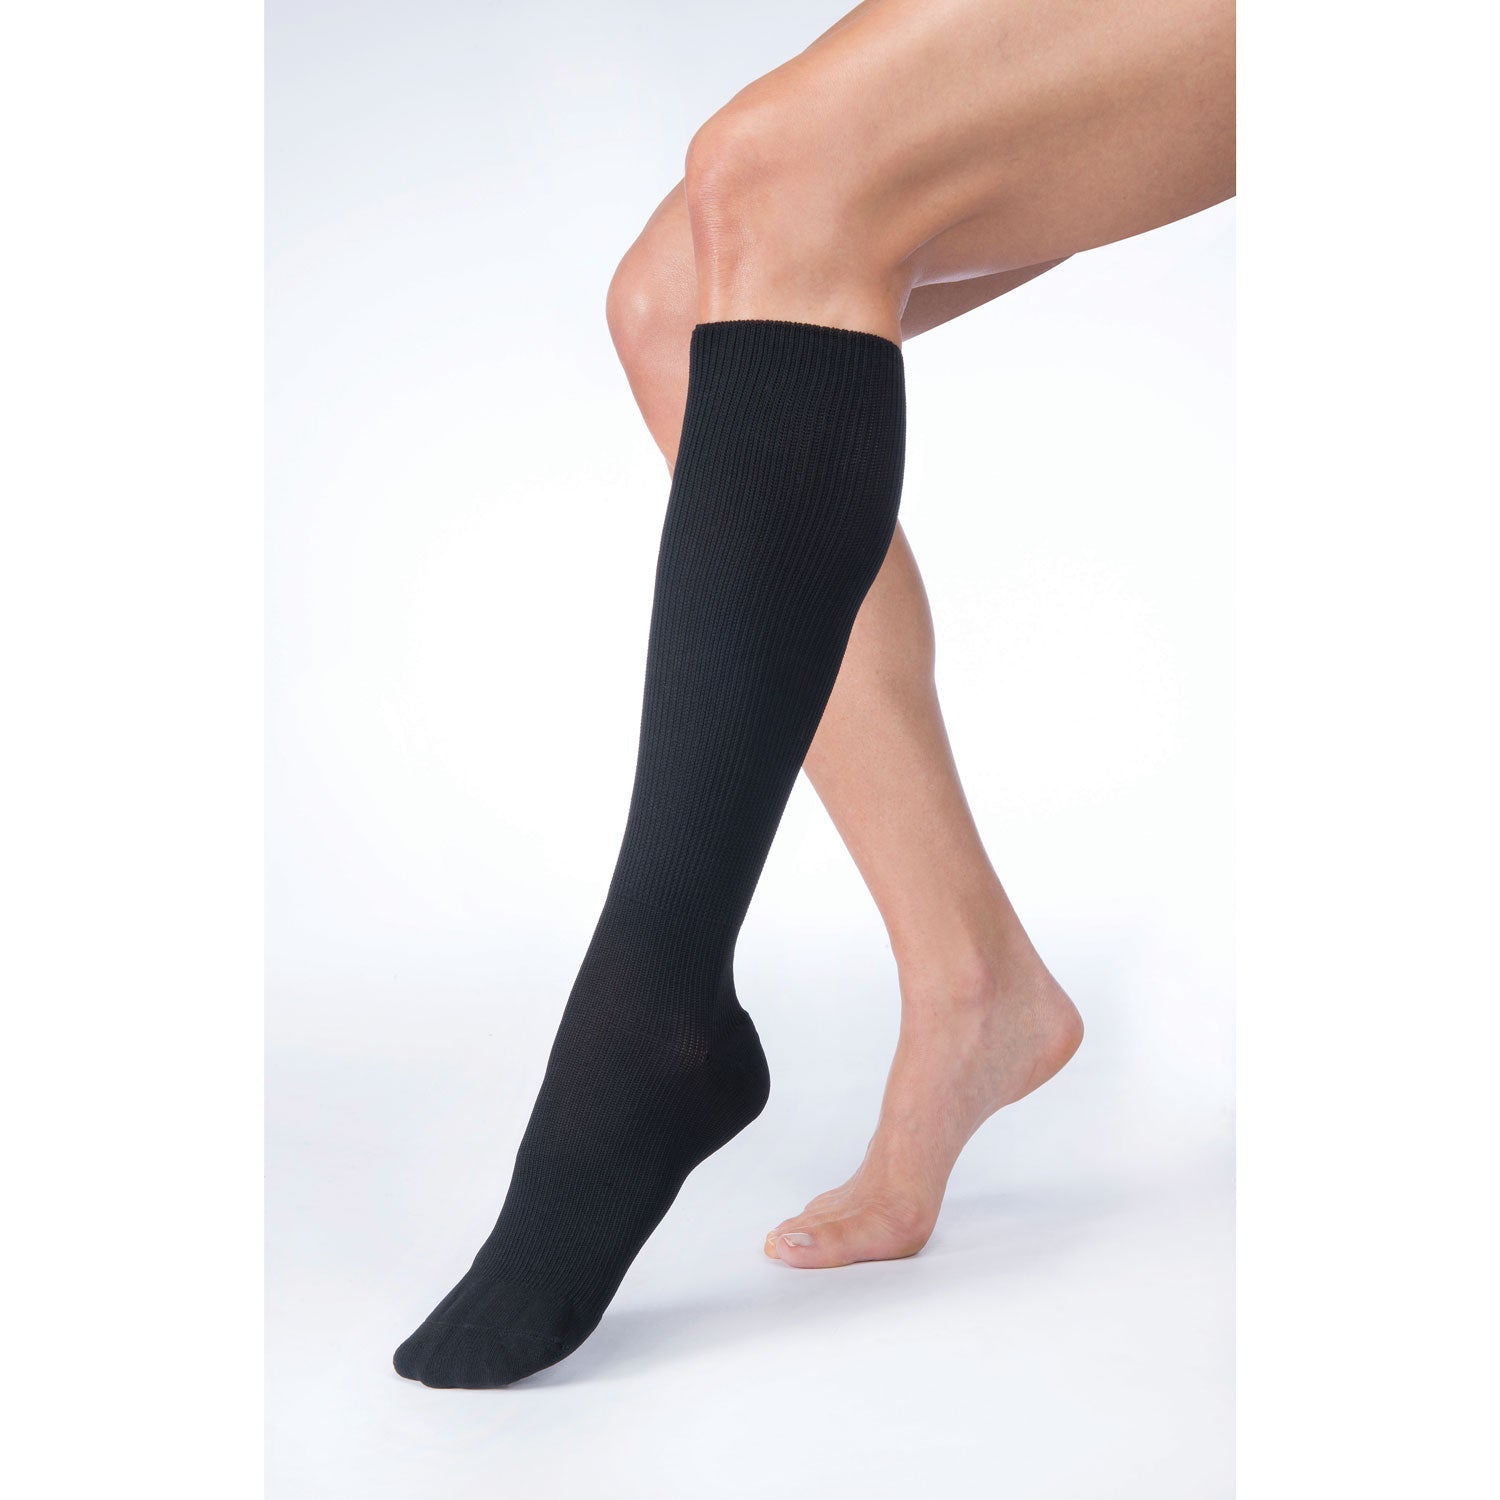 Hybrid knee-high graduated compression socks (Medium 15-20mmHg)